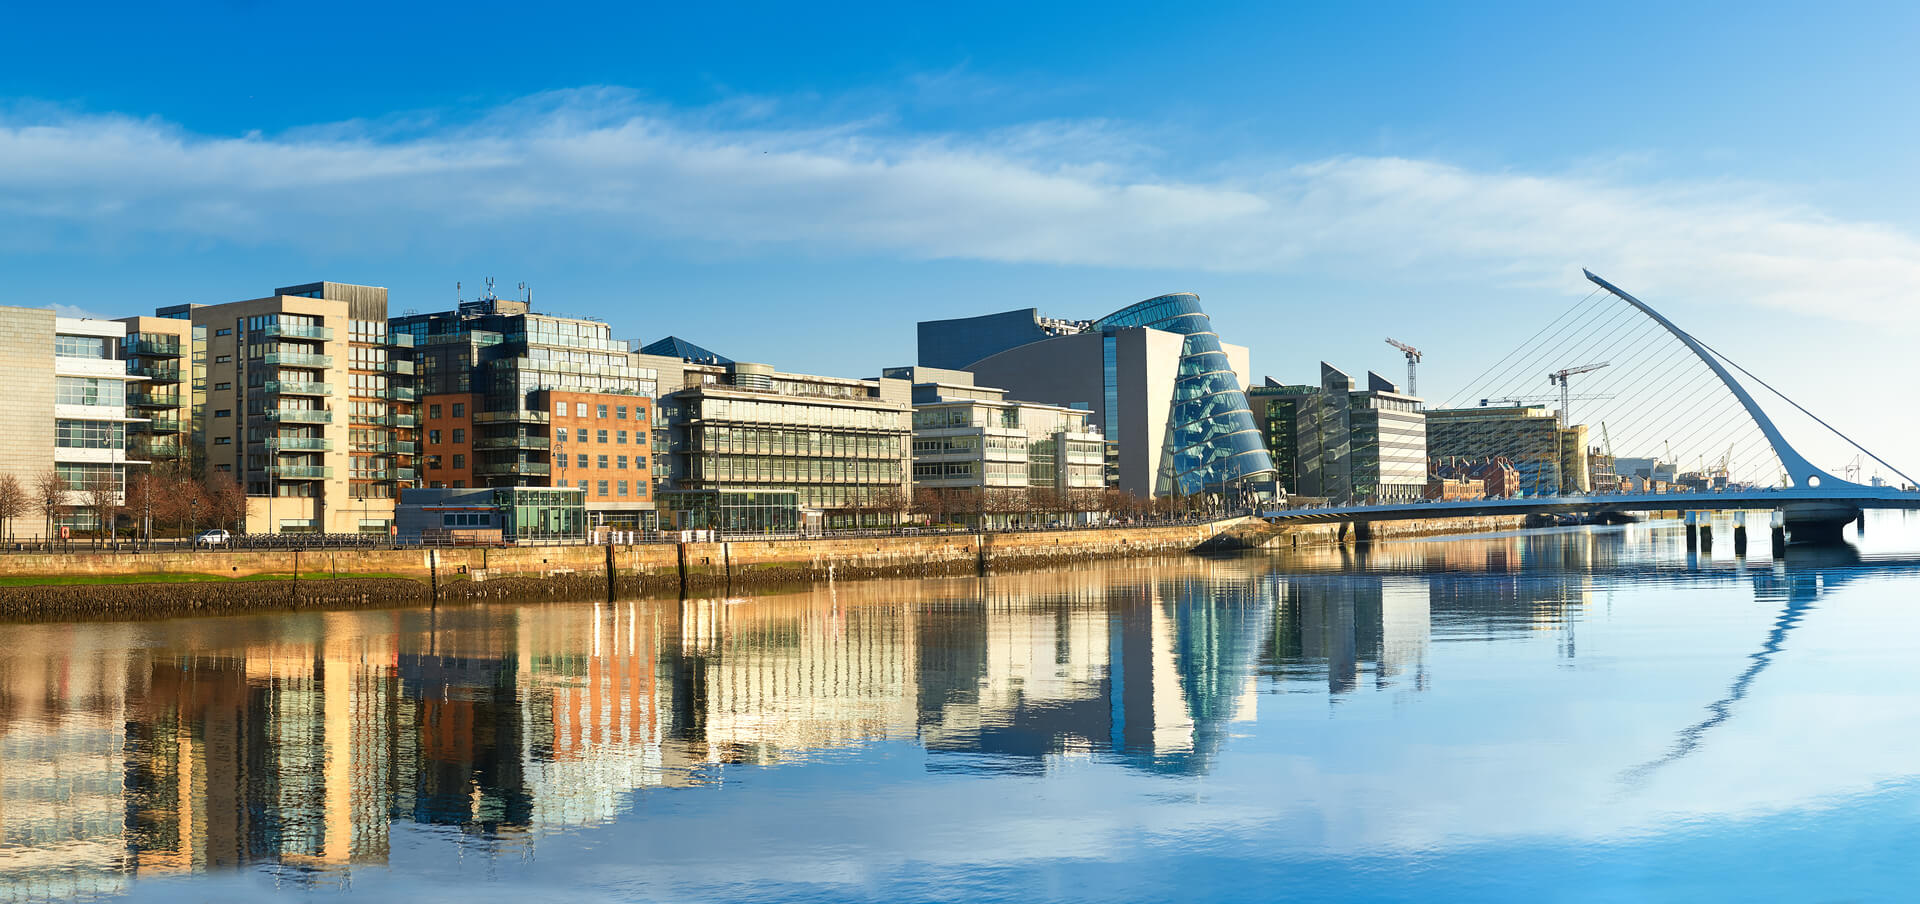 Bâtiments modernes et bureaux sur la rivière Liffey à Dublin par une journée ensoleillée, le pont sur la droite est le célèbre pont Harp.